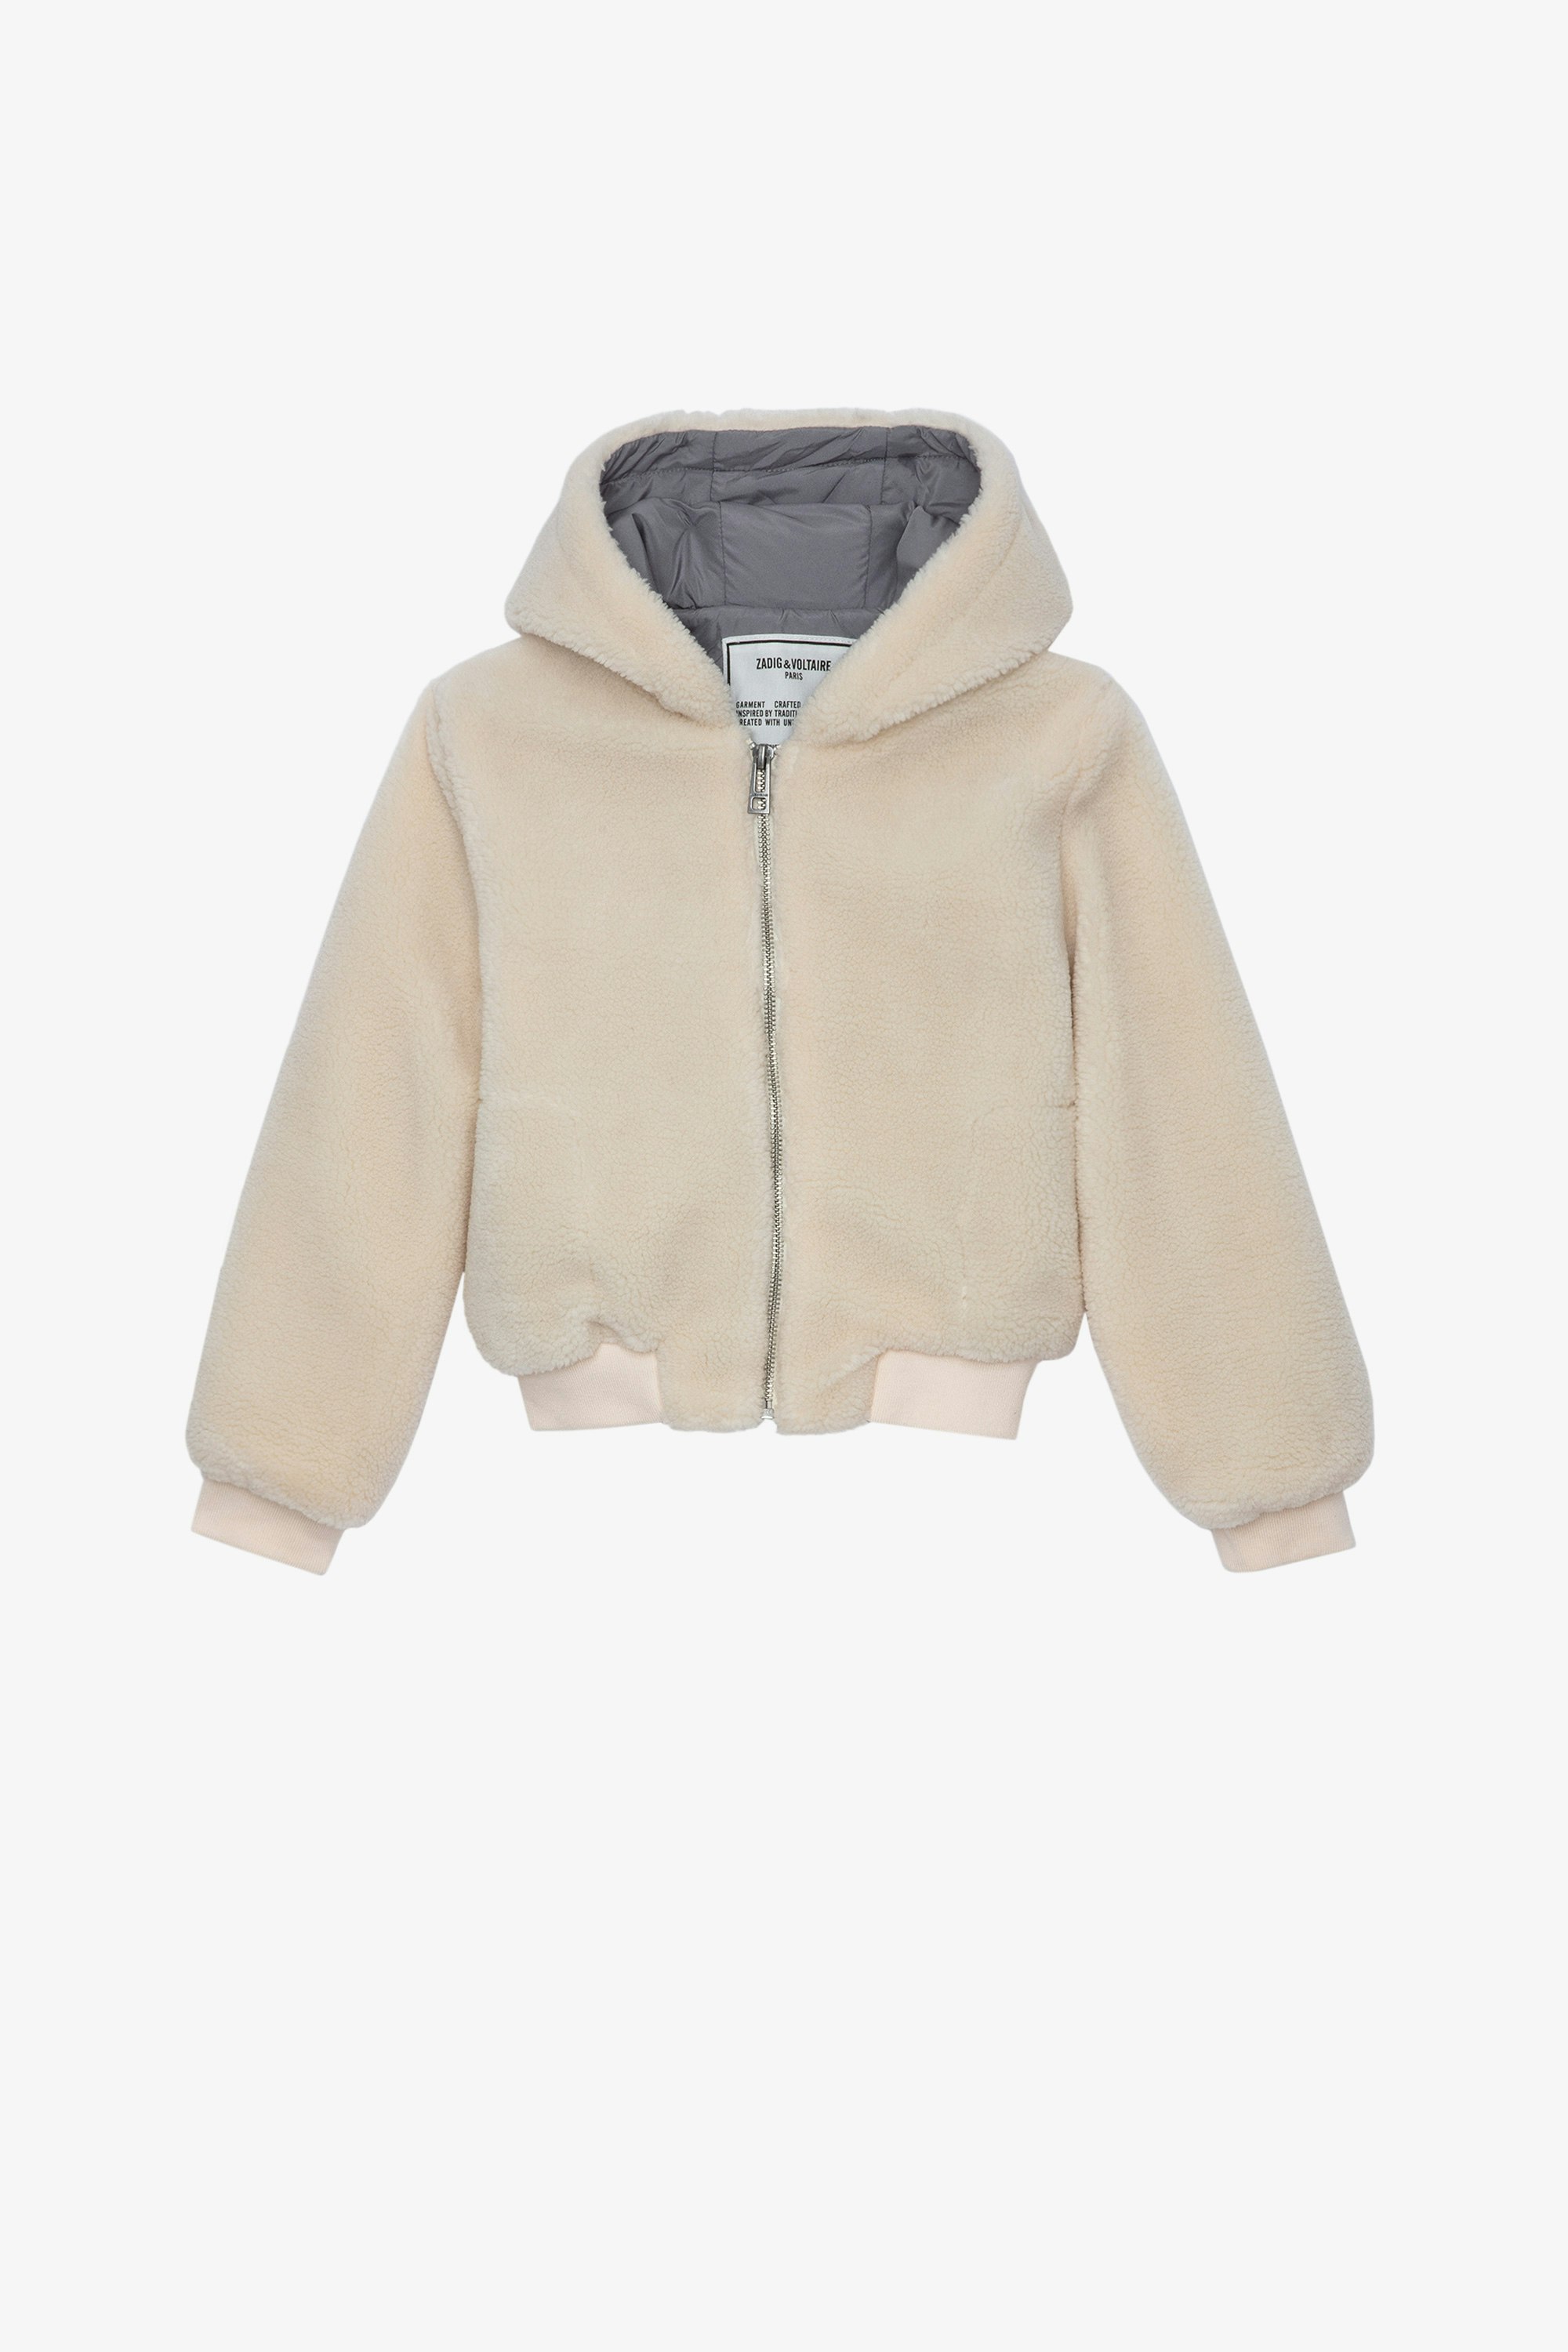 Charlie Children’s Jacket Children’s cream long-sleeve zip-up hoodie jacket 